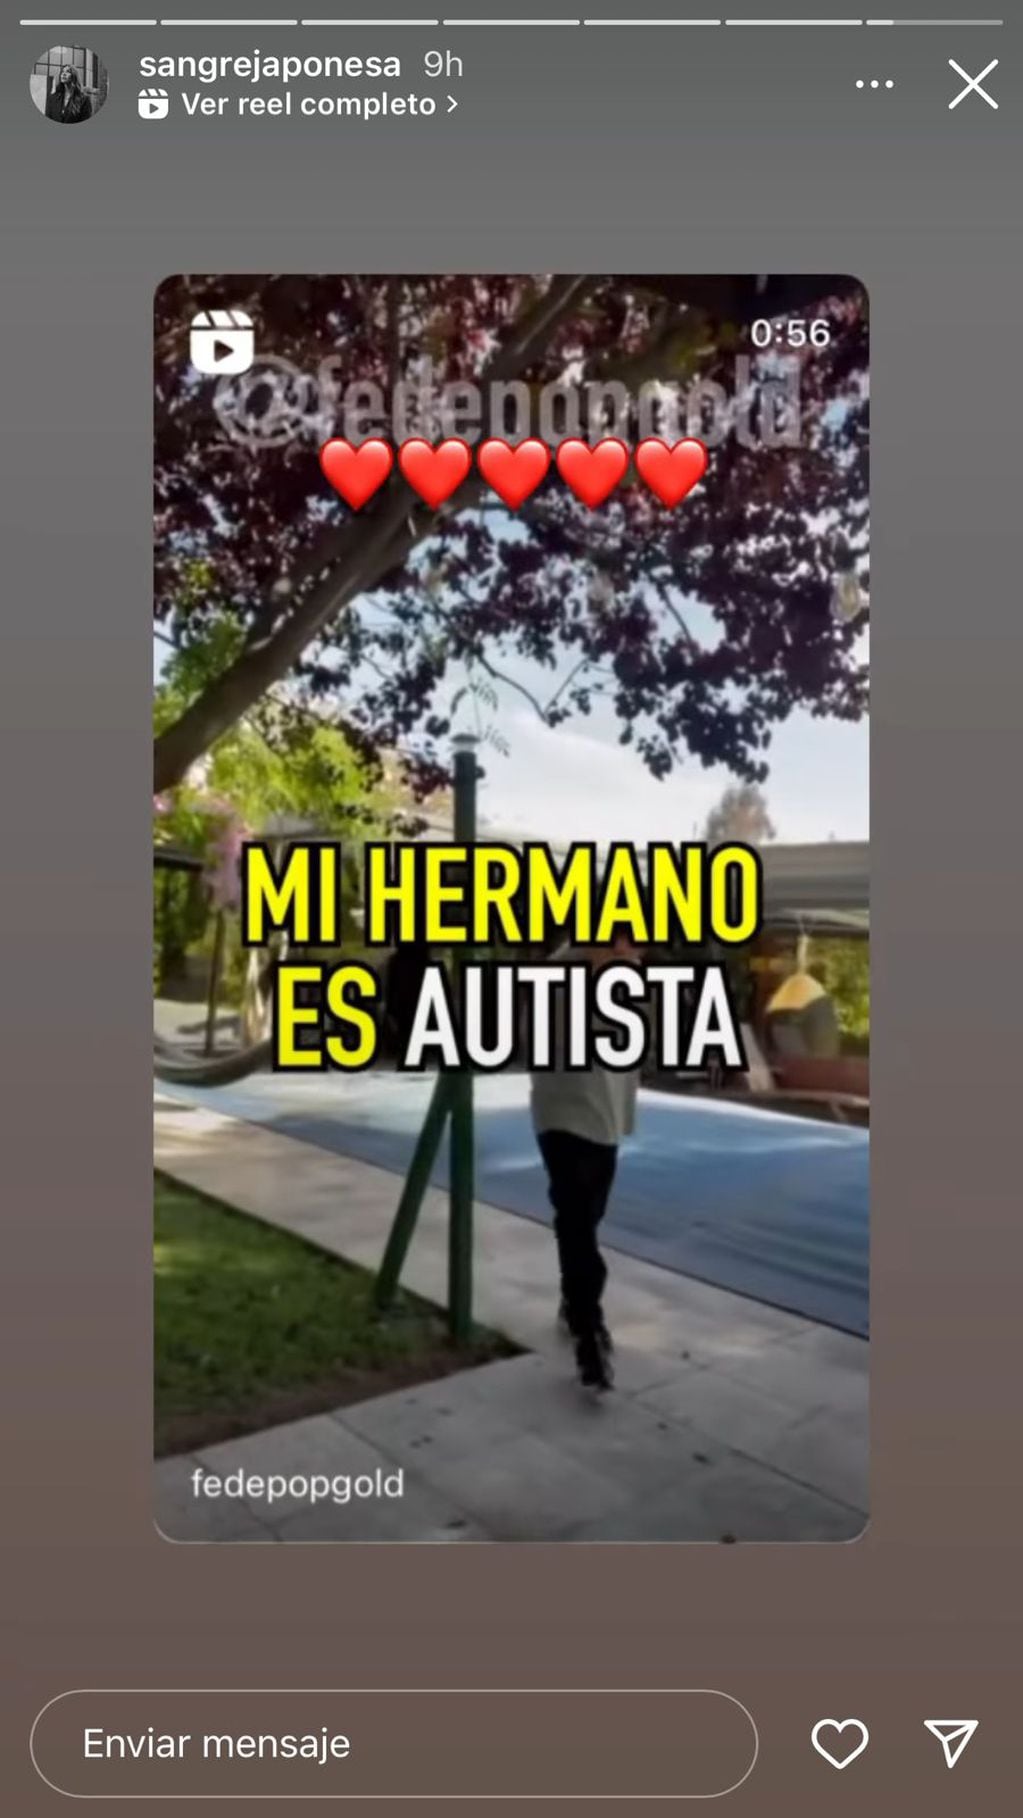 La China Suárez compartió el video de las hermanas mendocinas que hablan de autismo en TikTok.